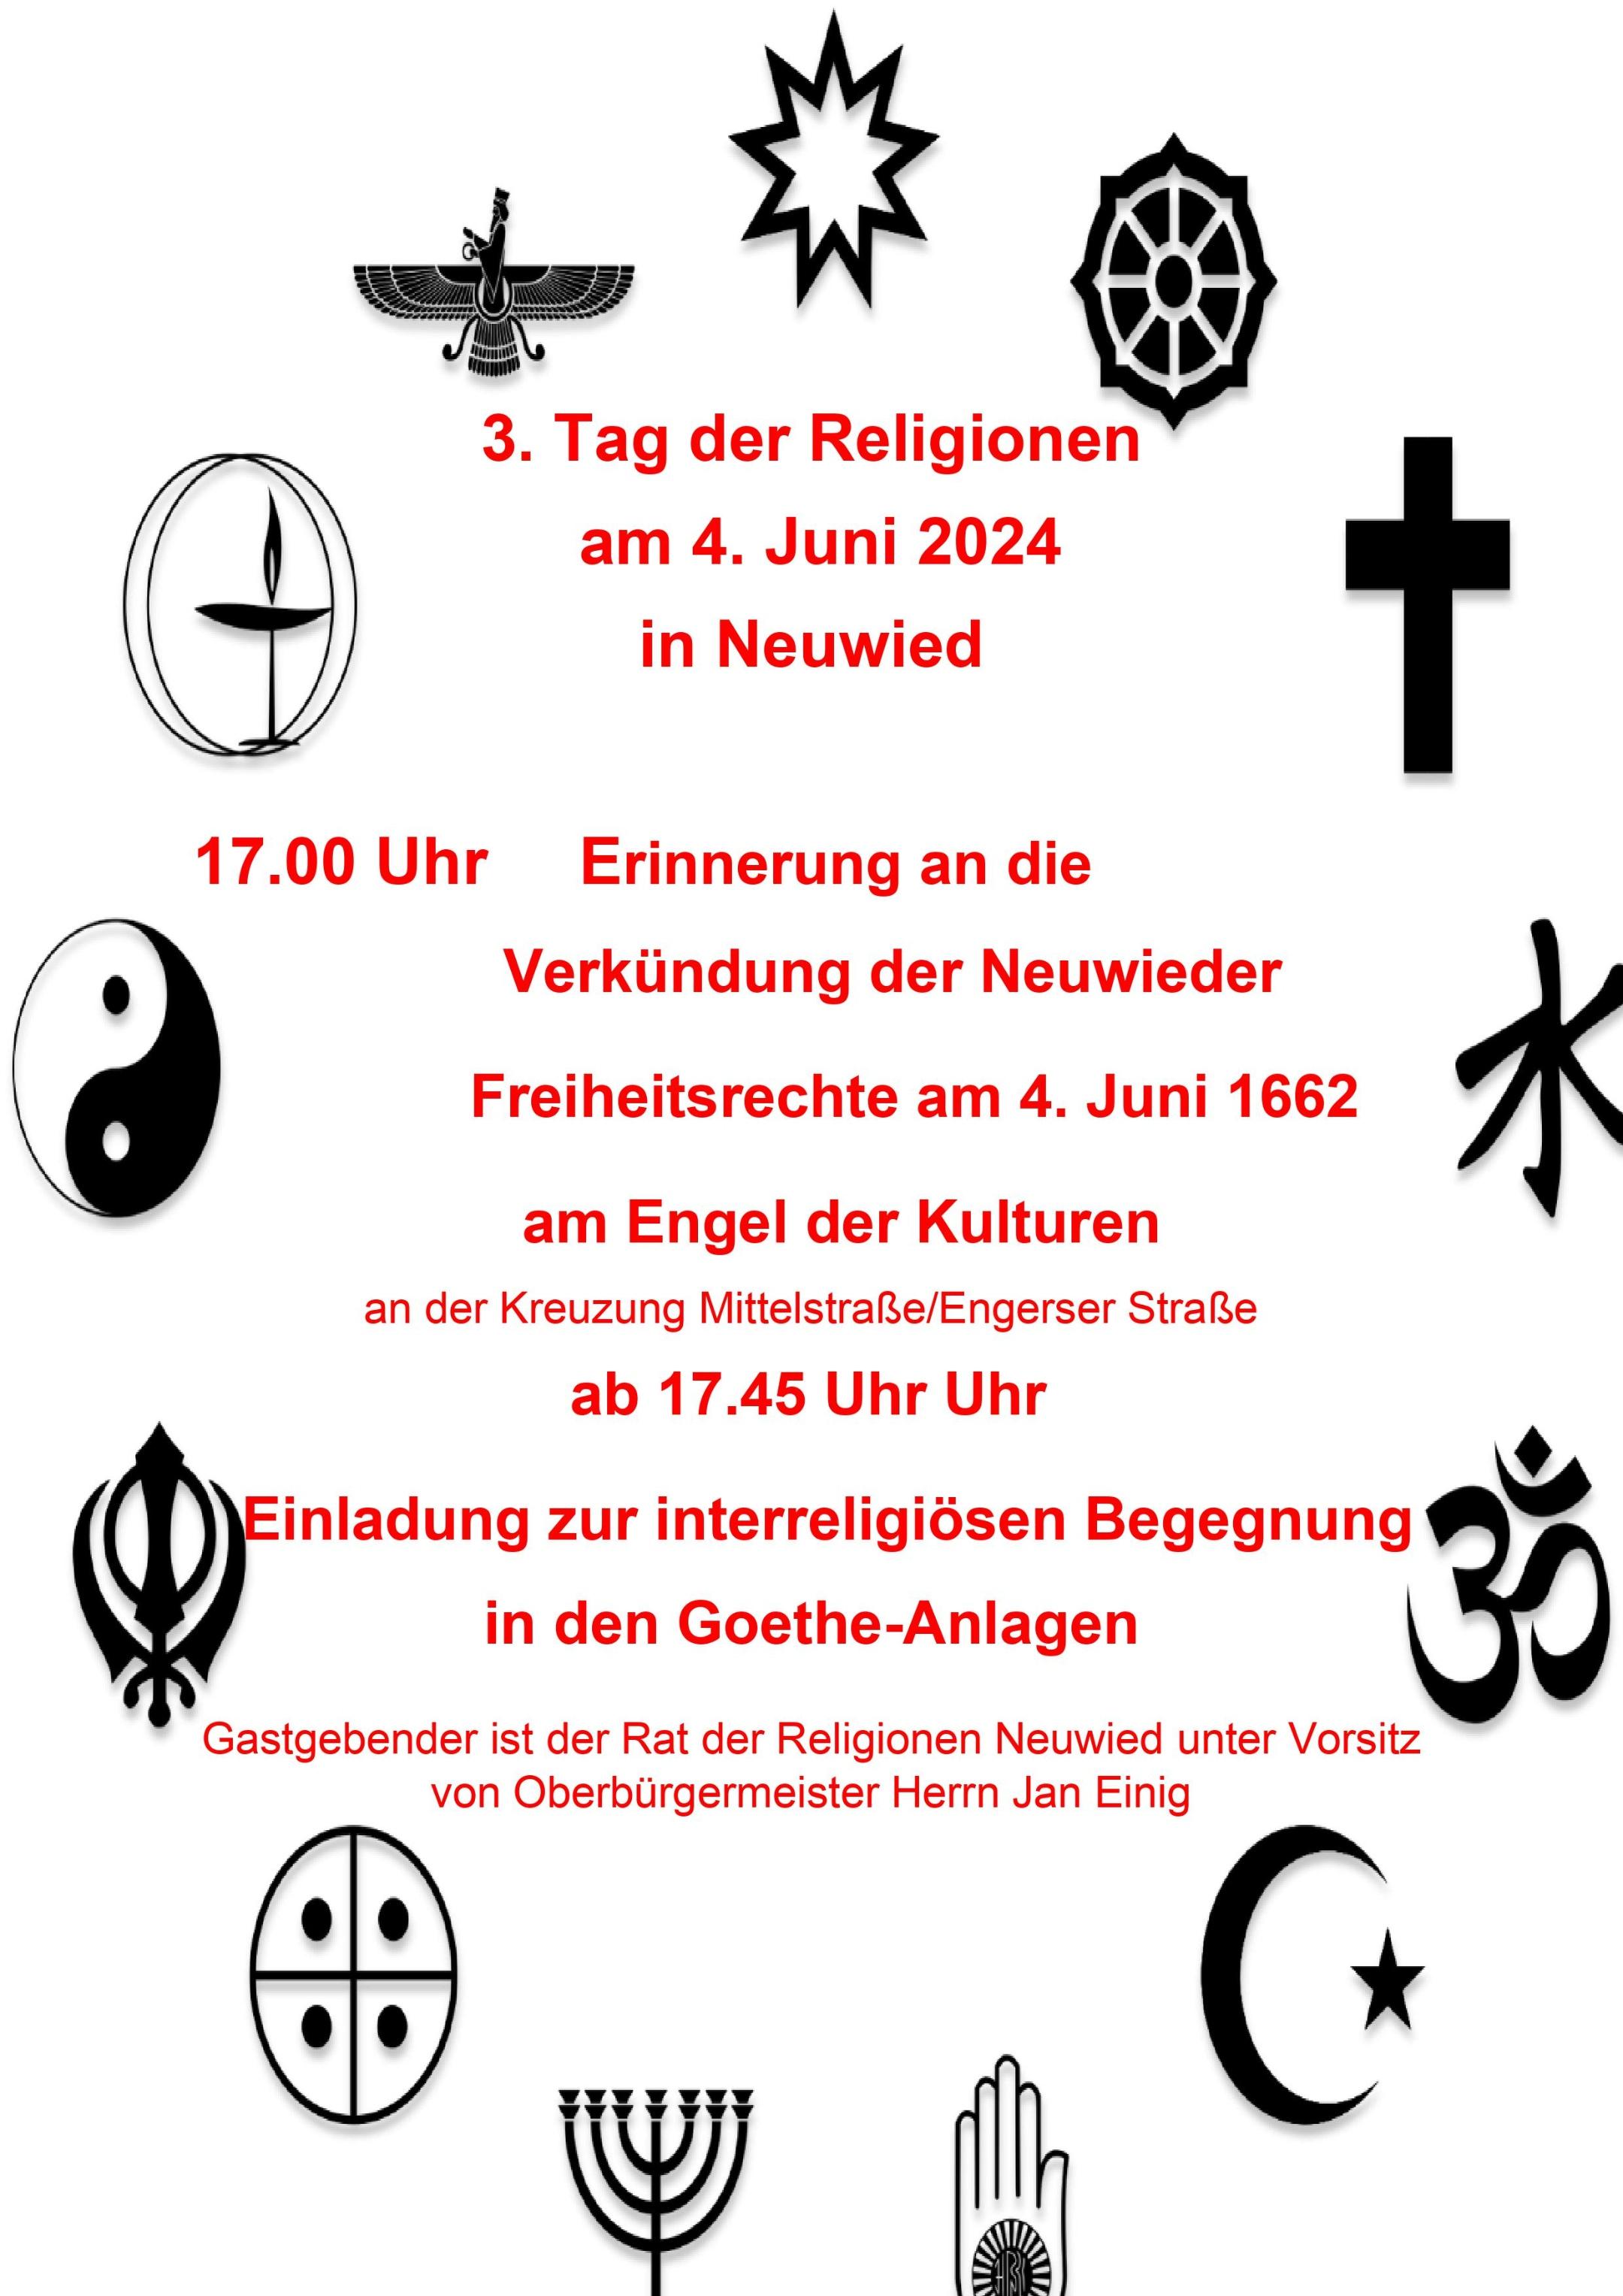 Tag der Religionen - 4. Juni 2024 in Neuwied